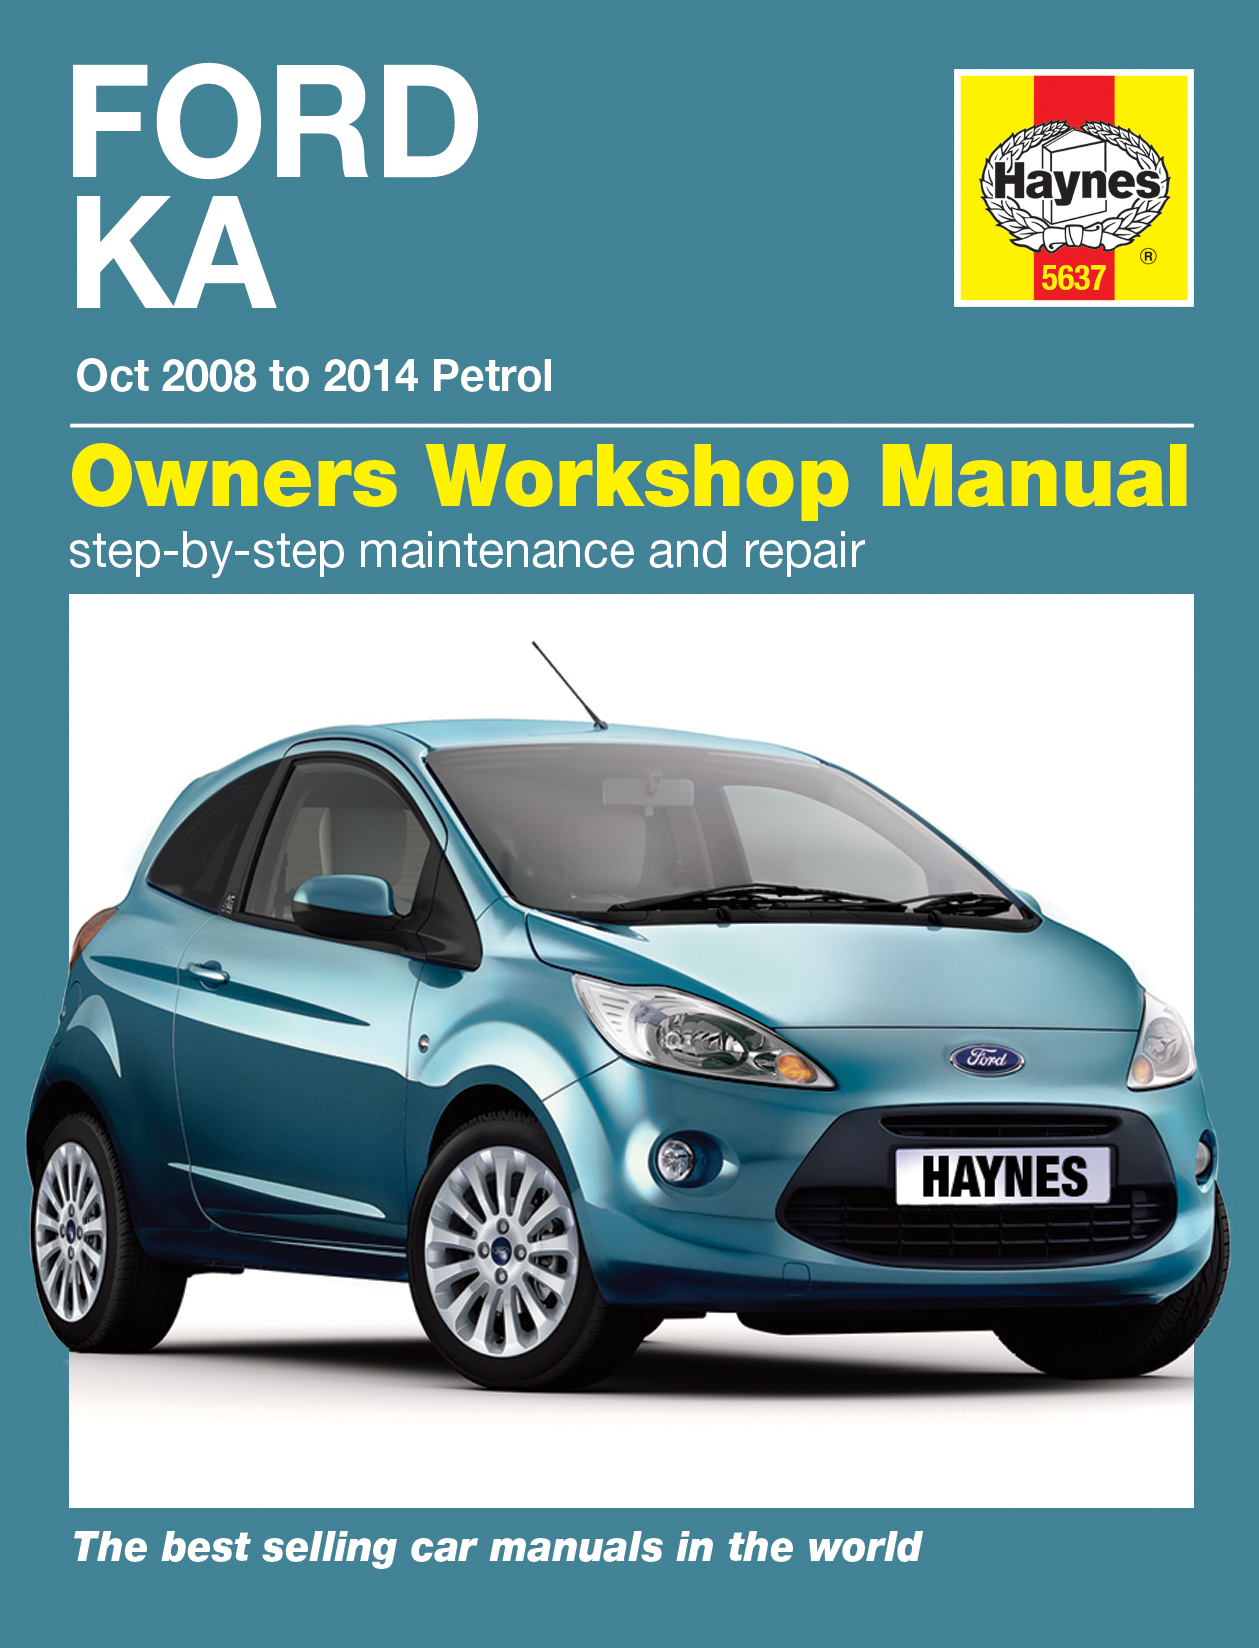 Haynes workshop manuals ford ka #8